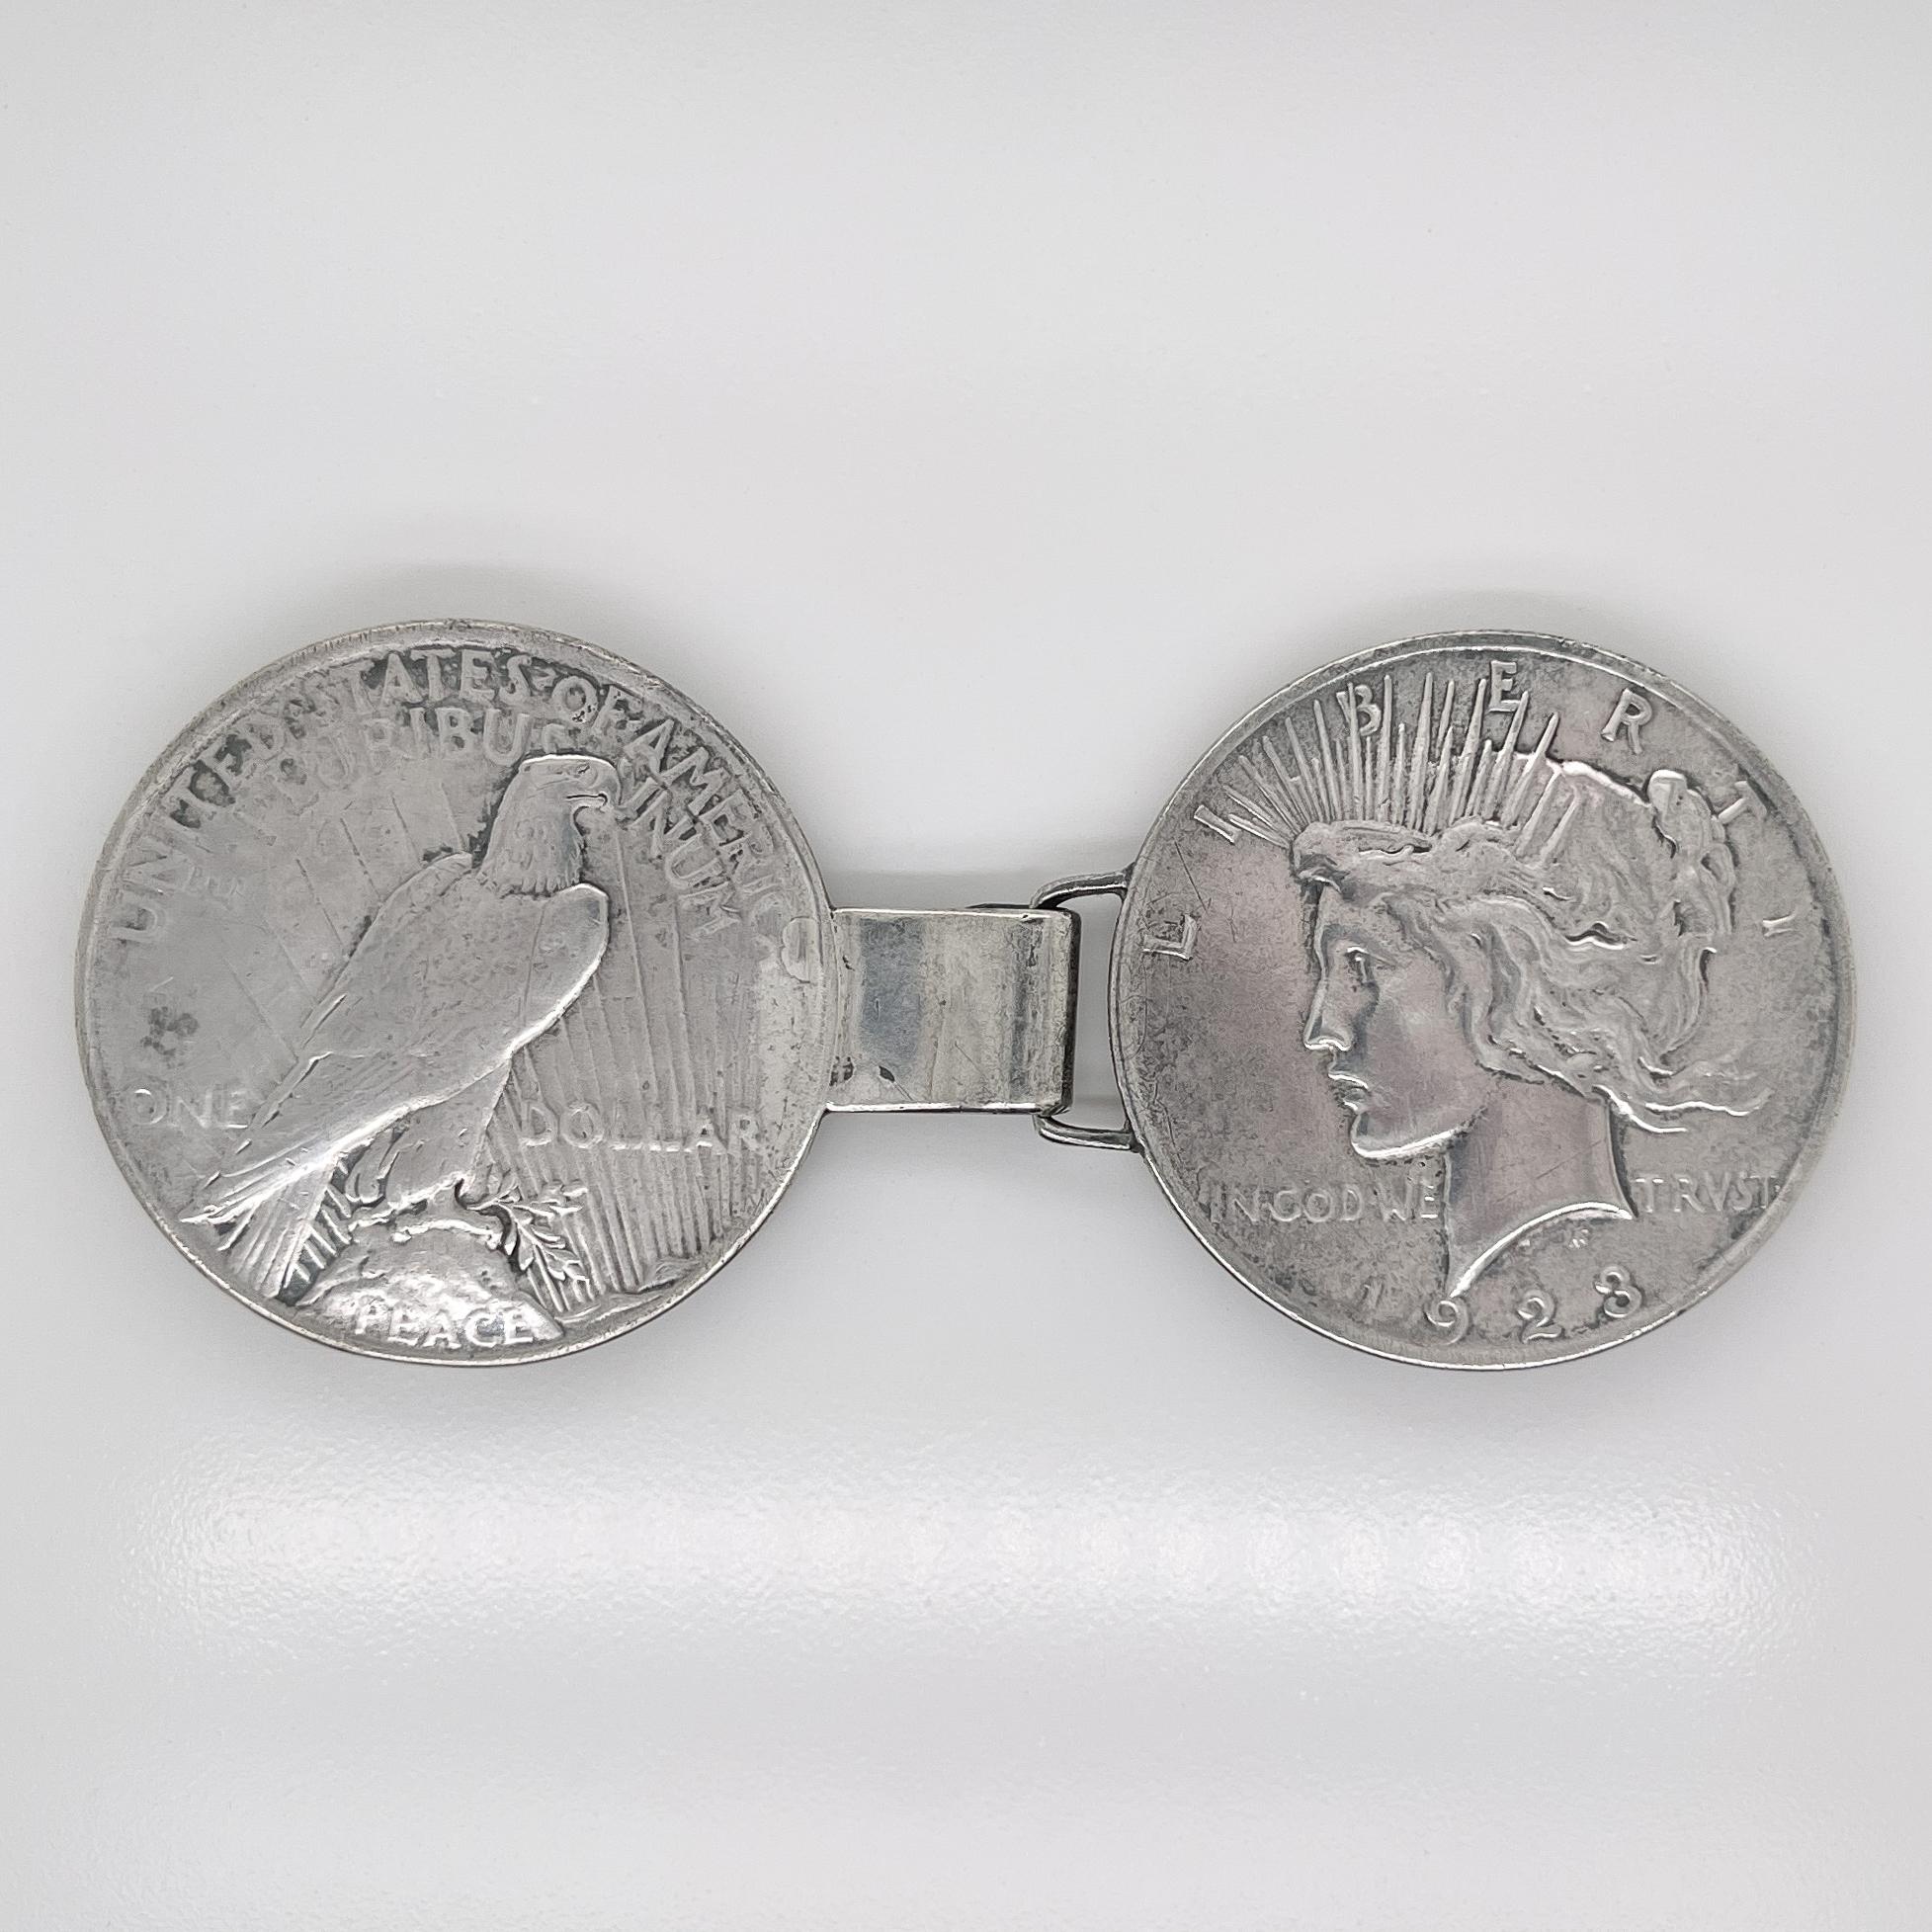 Eine schöne antike Volkskunst Gürtelschnalle.

Bestehend aus 2 Liberty Peace Silberdollarmünzen. Eine ist für 1923 gekennzeichnet.

Jeweils mit einer Schlaufe zur Befestigung eines Gürtels versehen. 

Verschluss mit Öse und Haken. 

Einfach eine